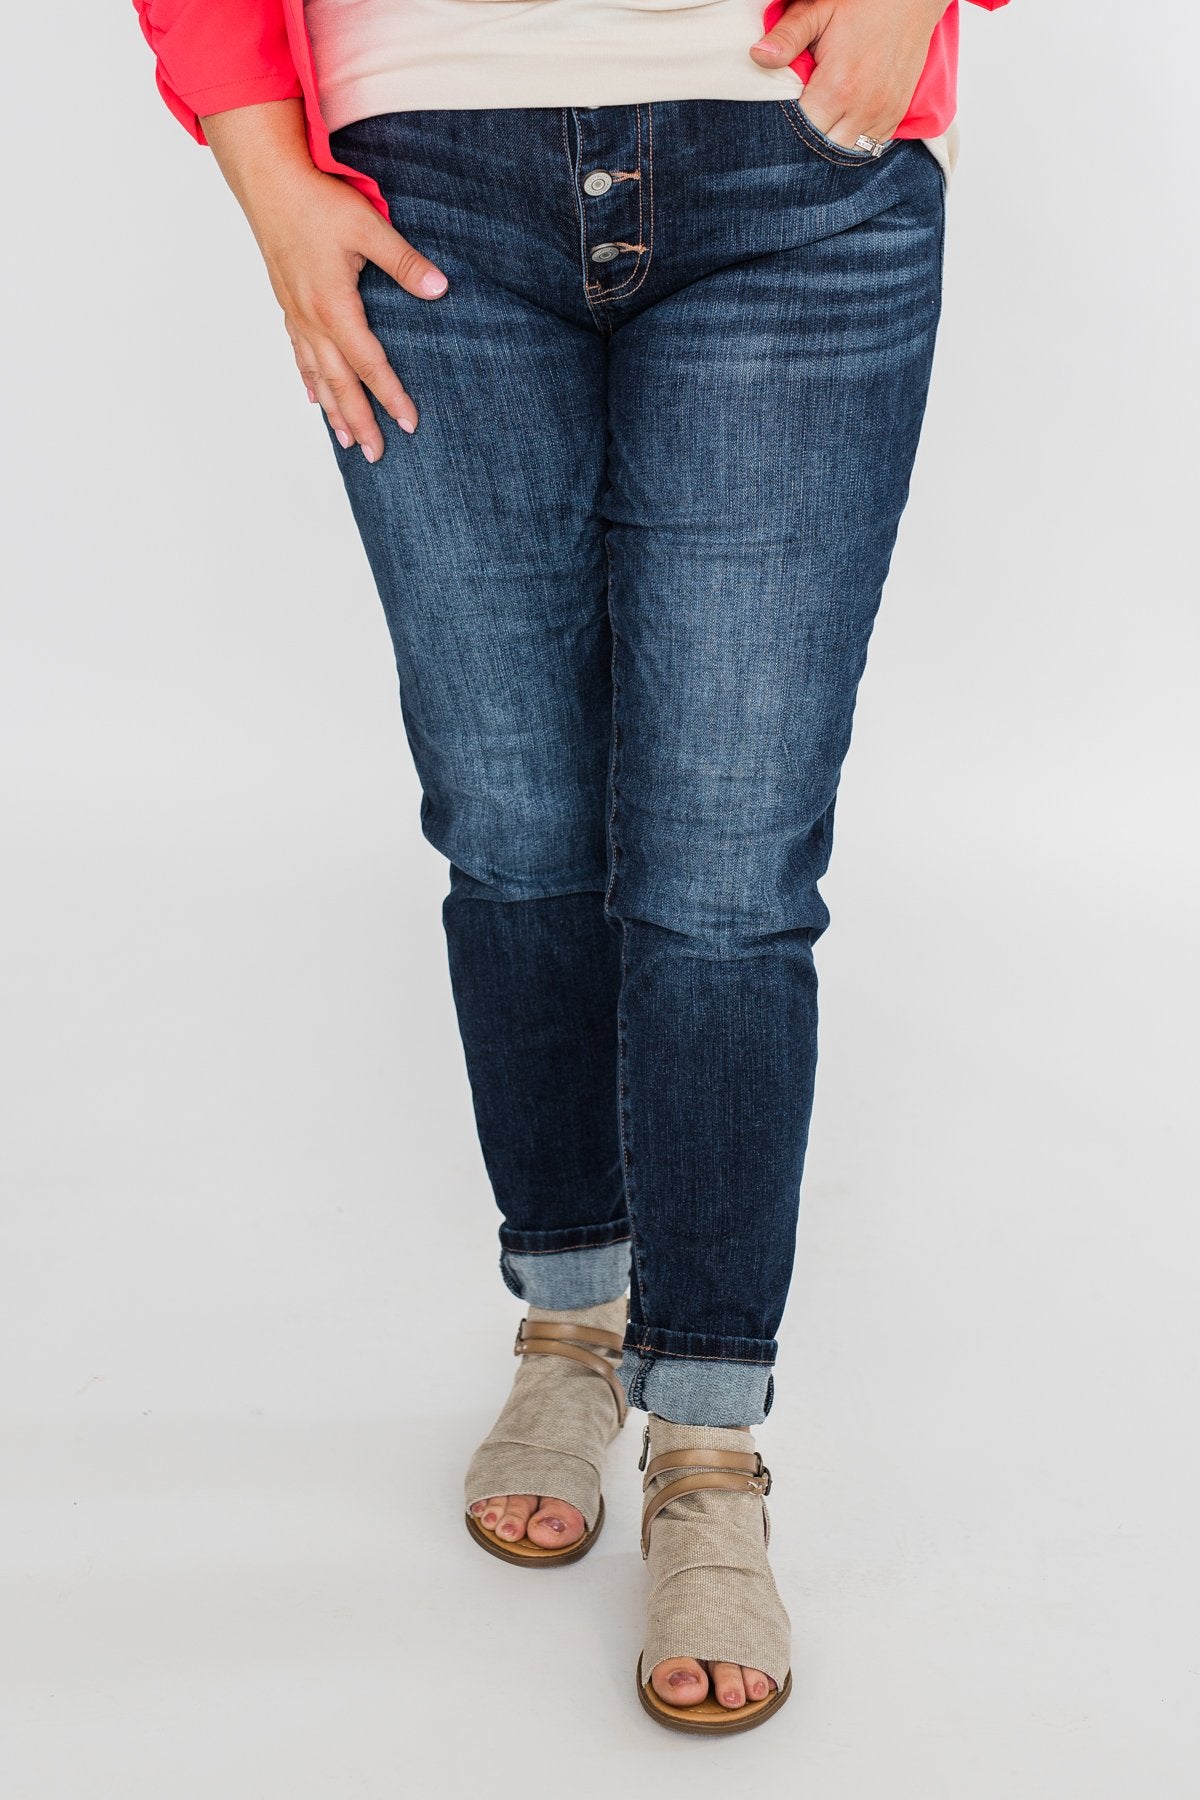 C'est Toi Non-Distressed Skinny Jeans- Mae Wash